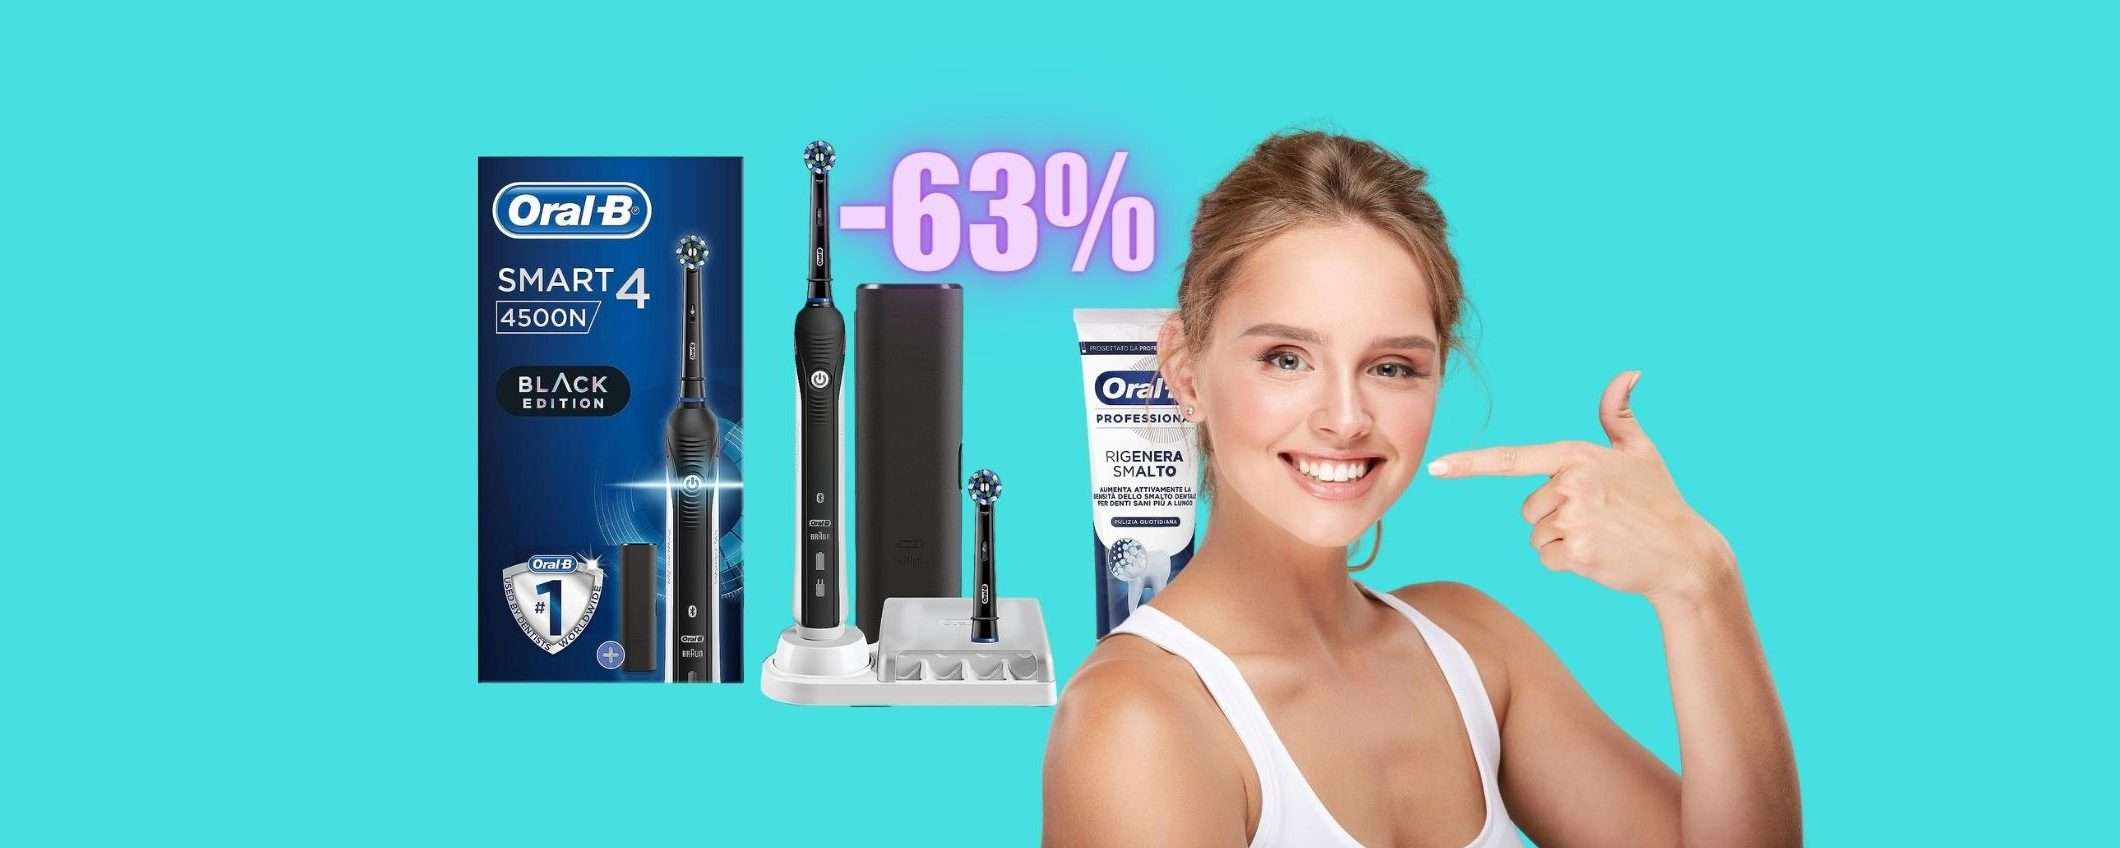 Oral-B Smart 4: il RE degli spazzolini elettrici in SCONTO del 63%